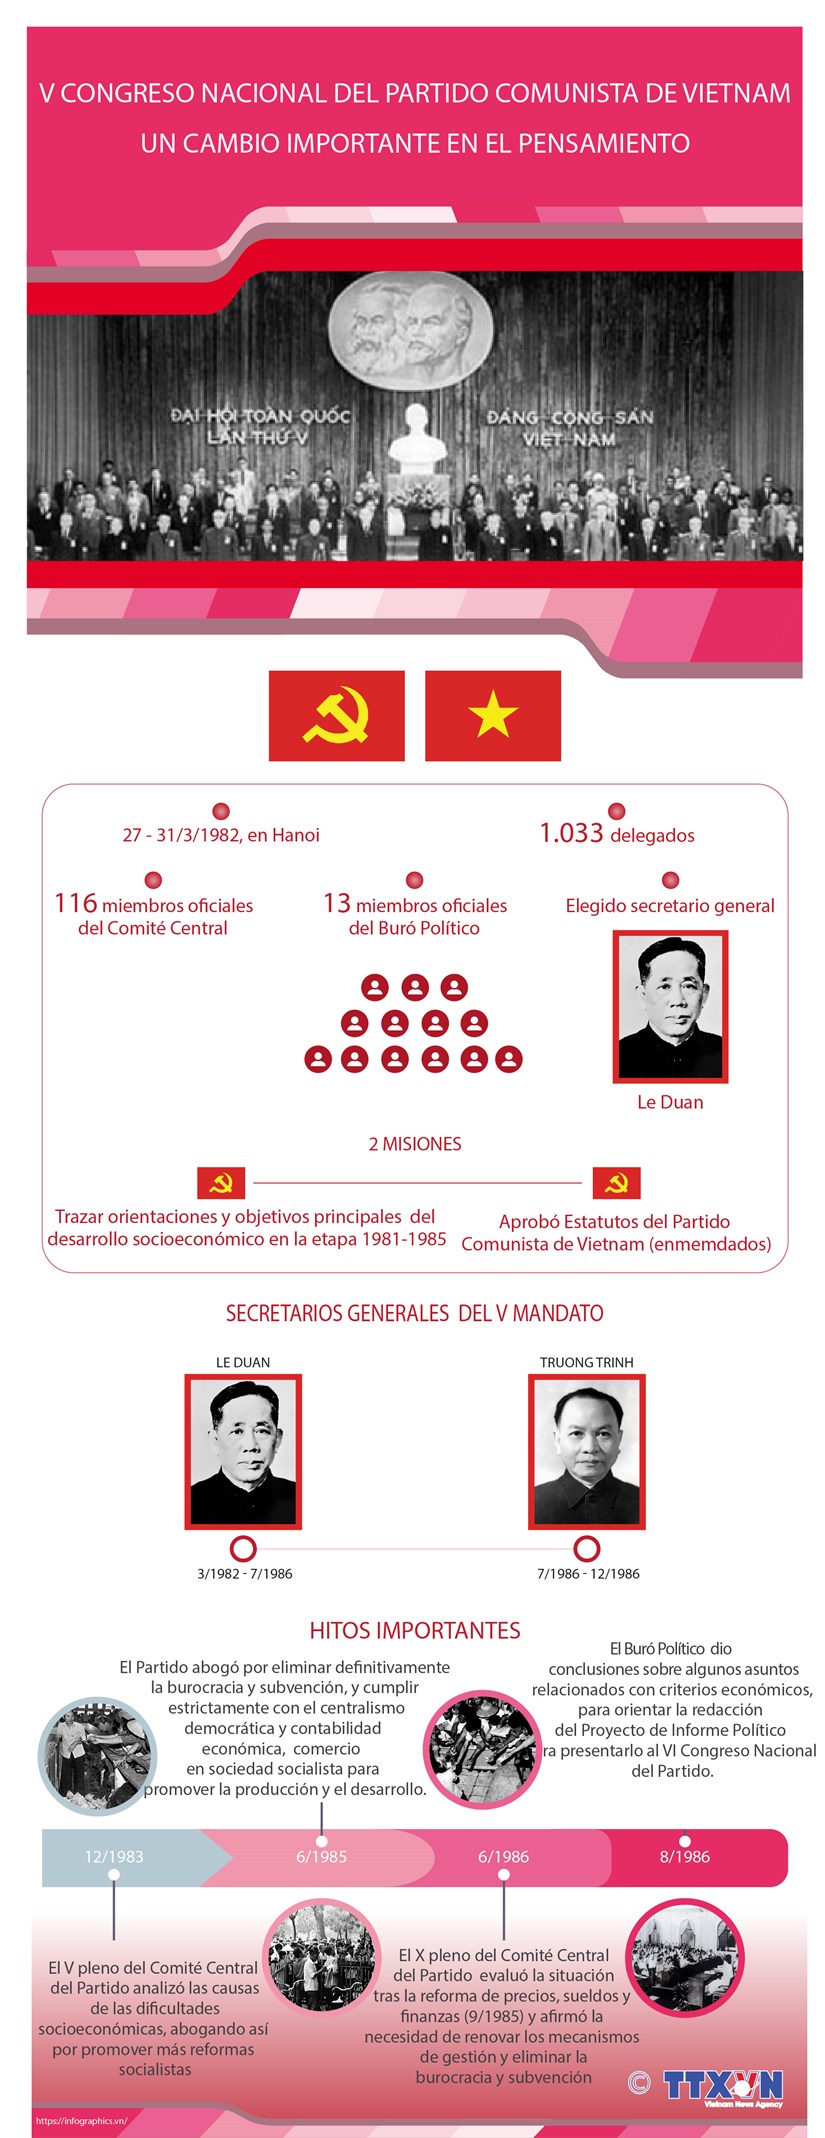 V Congreso Nacional del Partido Comunista de Vietnam: Un cambio importante en el pensamiento hinh anh 1